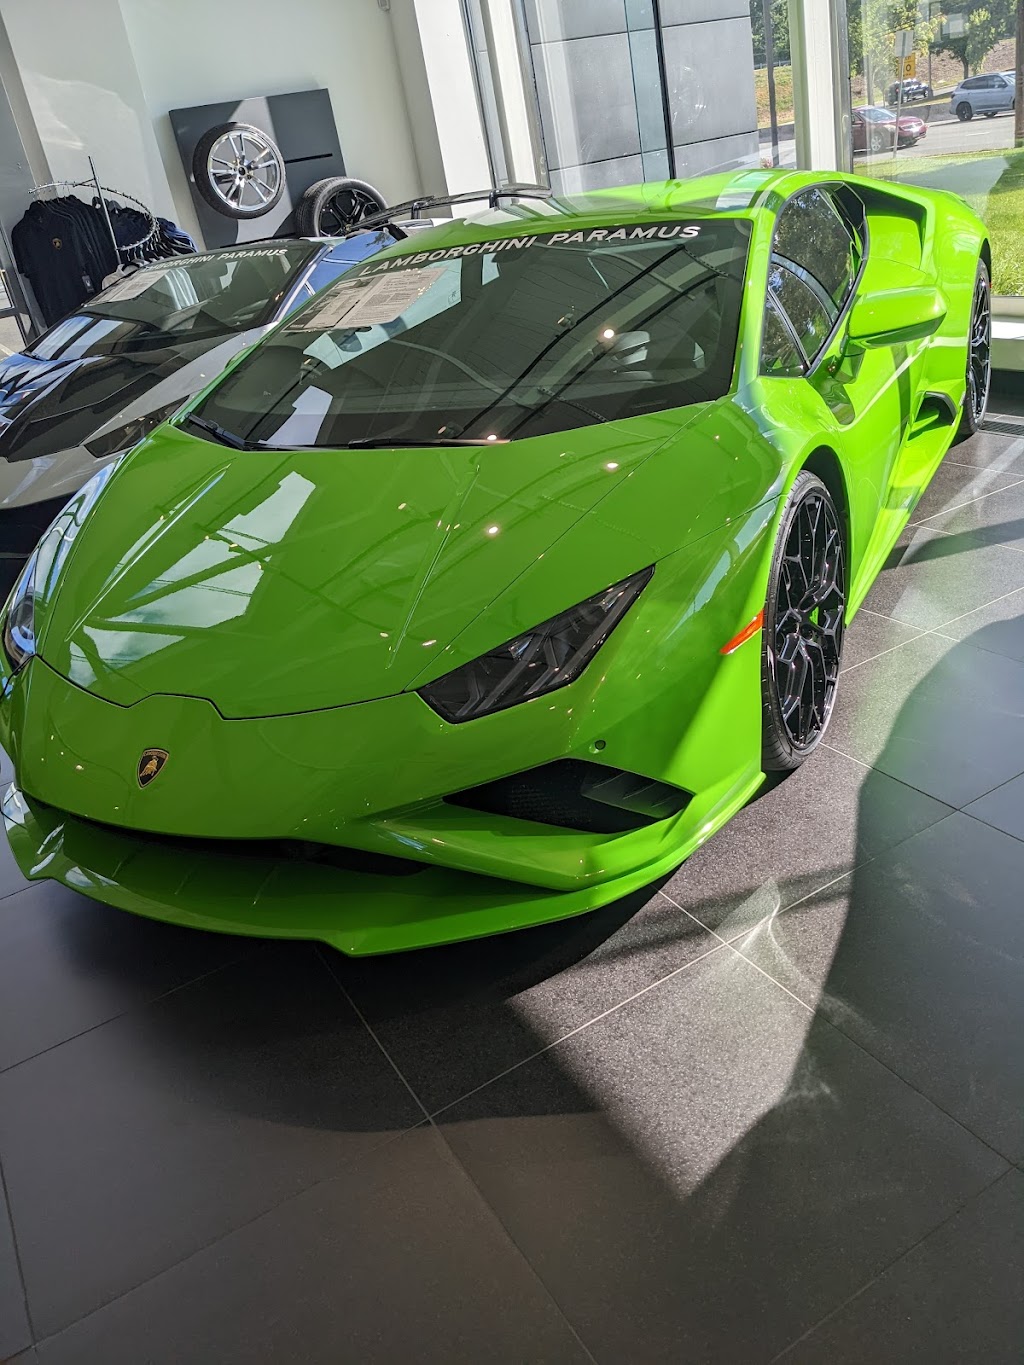 Lamborghini Paramus | 401 NJ-17, Paramus, NJ 07652, USA | Phone: (201) 597-9339